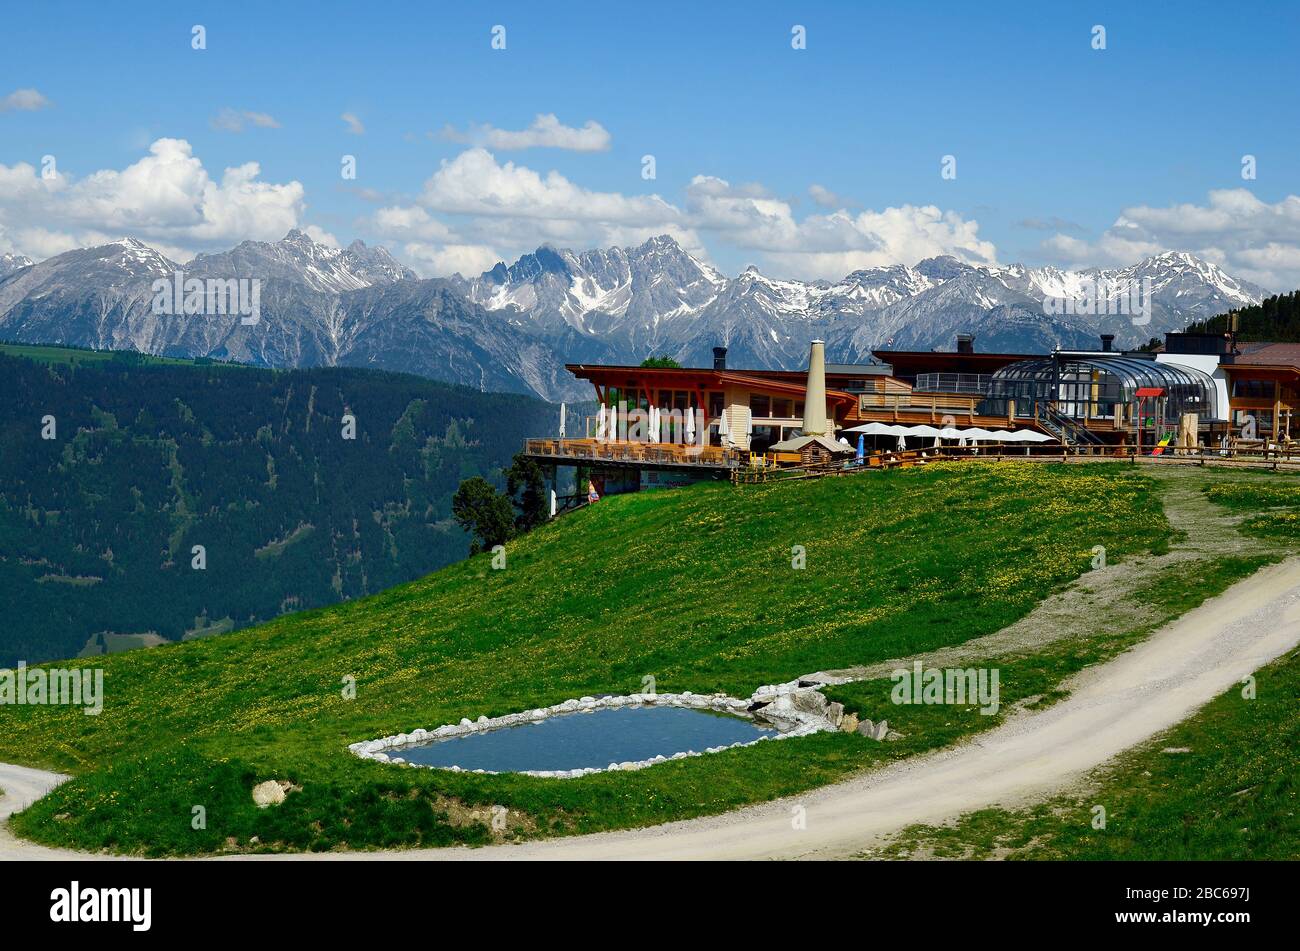 Jerzens, Österreich - 24. Juni 2016: Hochzeiger- Haus, cfe-Restaurant und Gipfelstation für Seilbahn mit Blick auf die Alpen Stockfoto